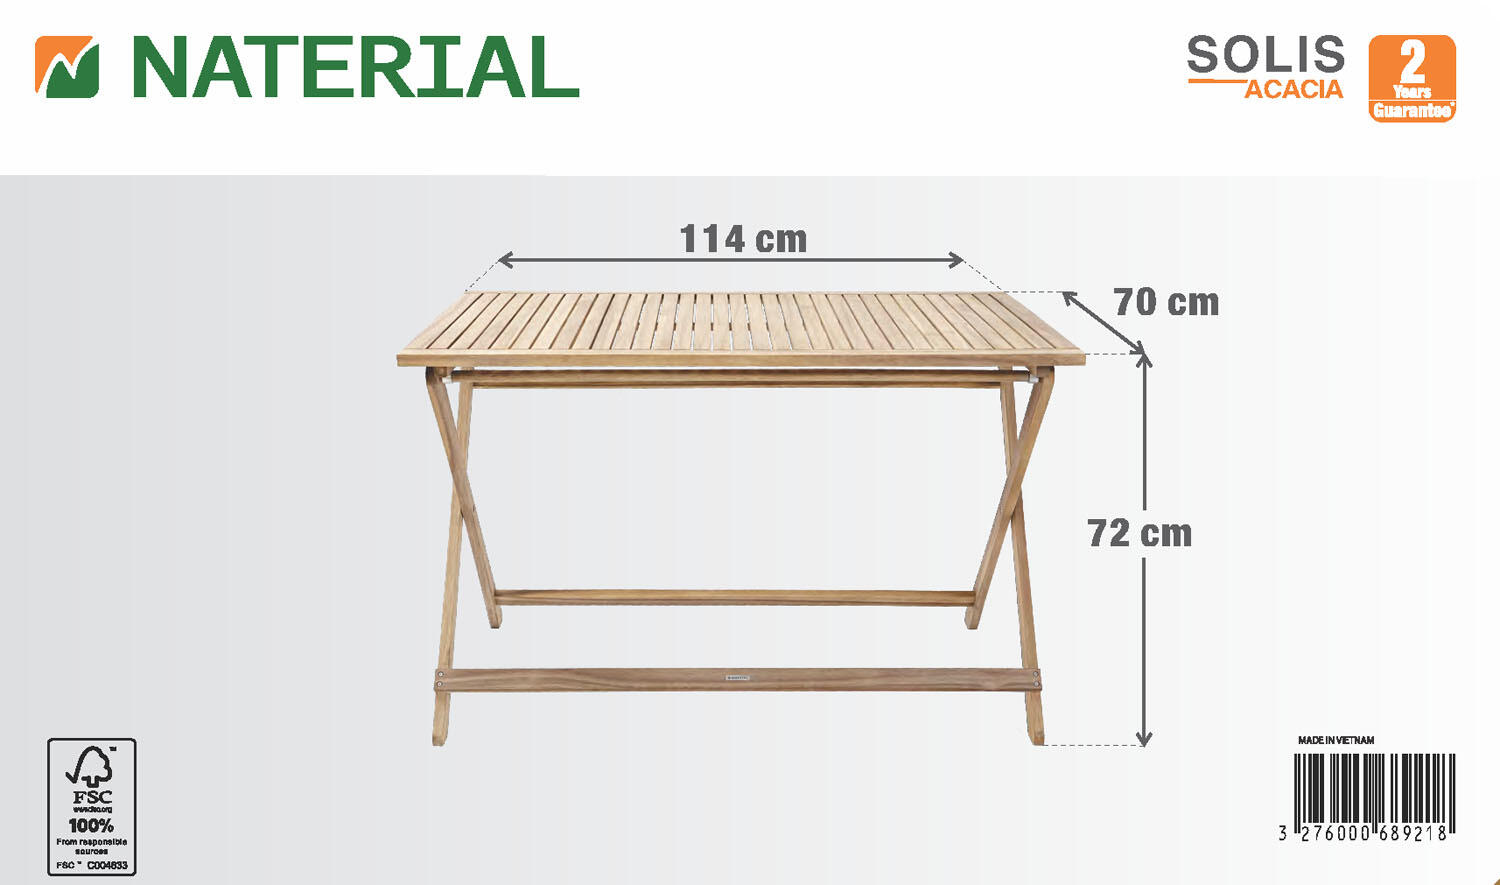 Tavolo da giardino rettangolare Solis NATERIAL con piano in legno L 70 x L 114 cm - 12